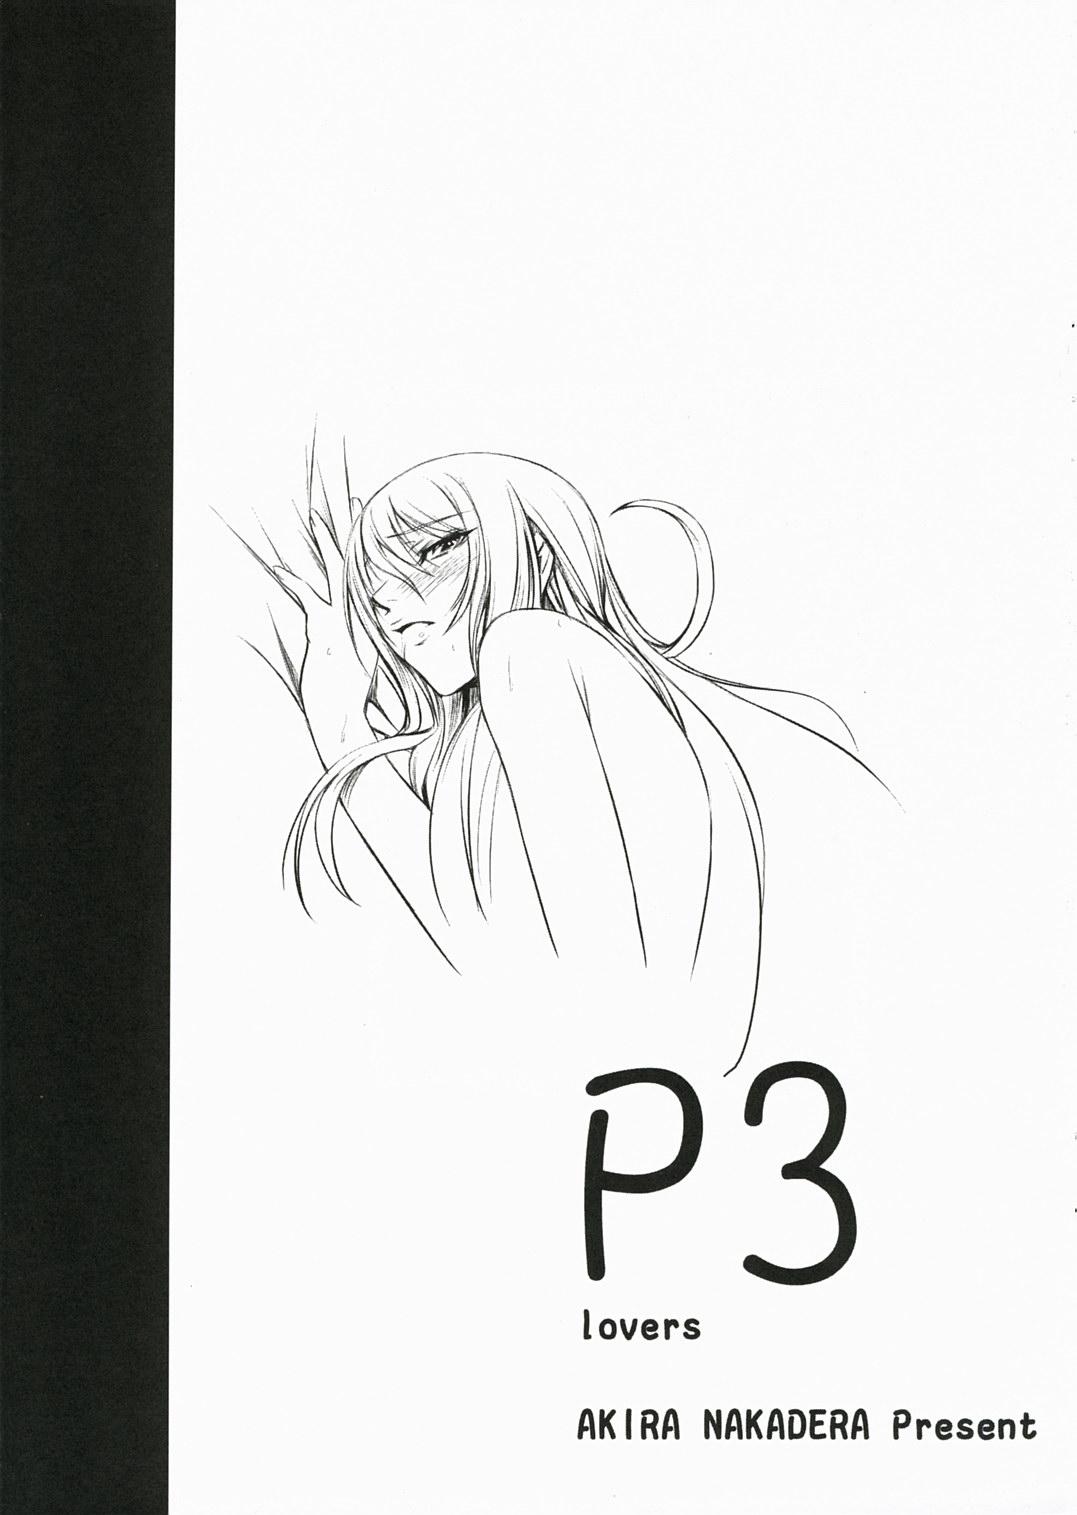 Gordibuena P3 lovers - Persona 3 Masterbate - Page 2